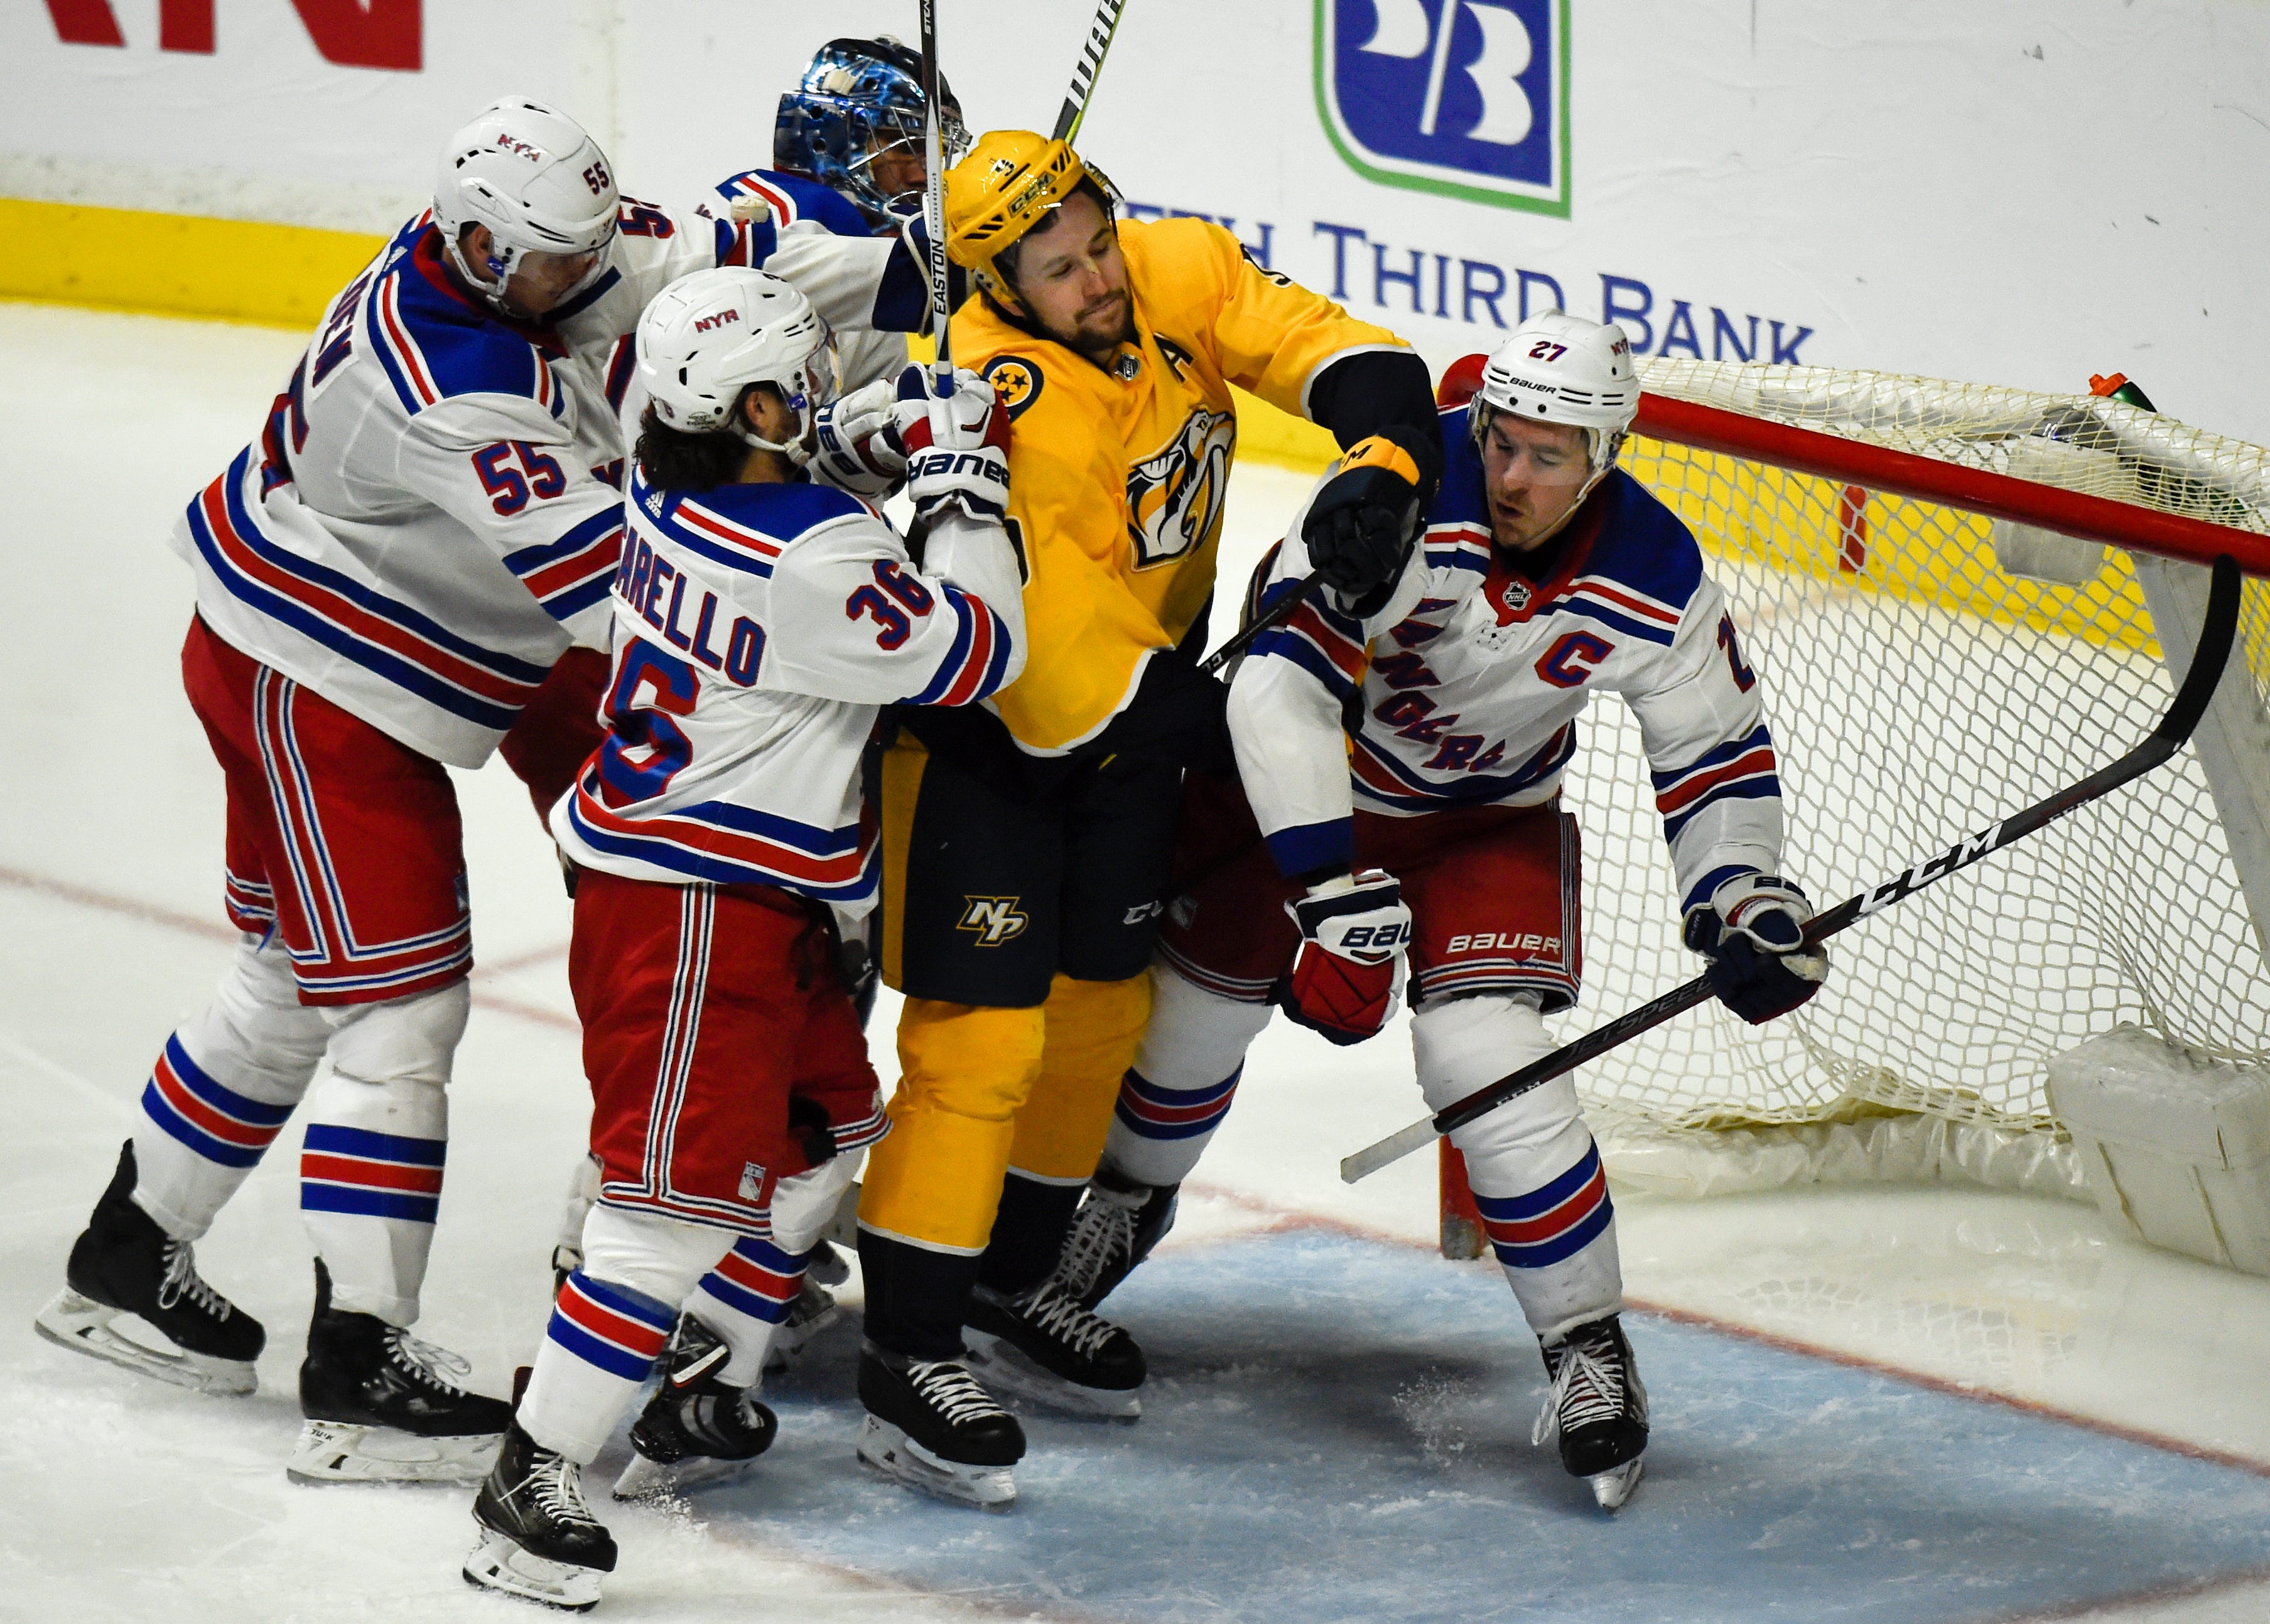 Predators' Filip Forsberg suspended 3 games by NHL for hit on Rangers' Jimmy Vesey